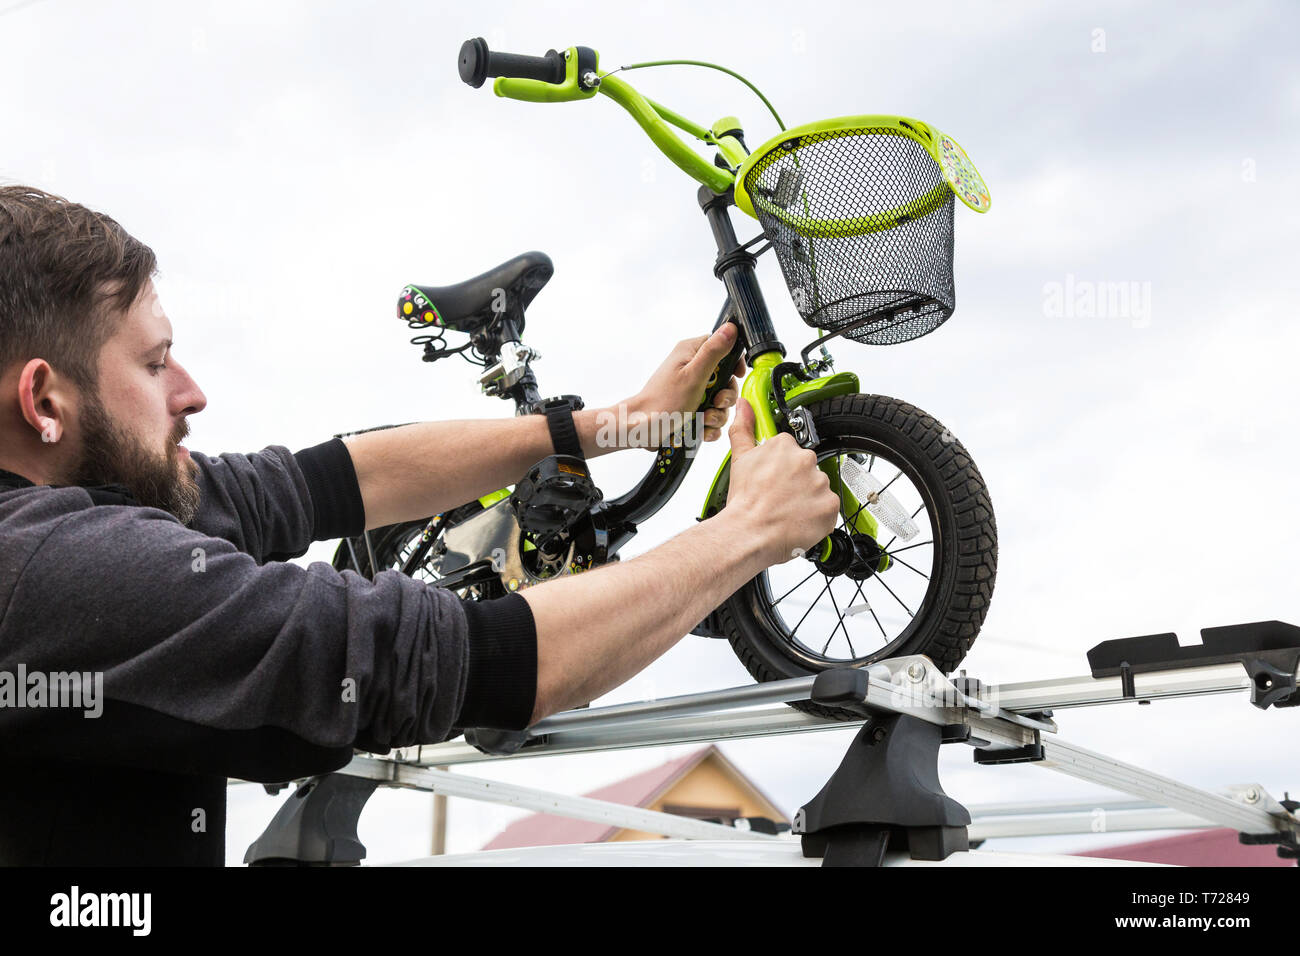 Fahrrad Transport - ein Mann befestigt und installiert ein Fahrrad auf dem  Dach eines Autos in einer speziellen für die Fahrradmitnahme. Die  Entscheidung Stockfotografie - Alamy